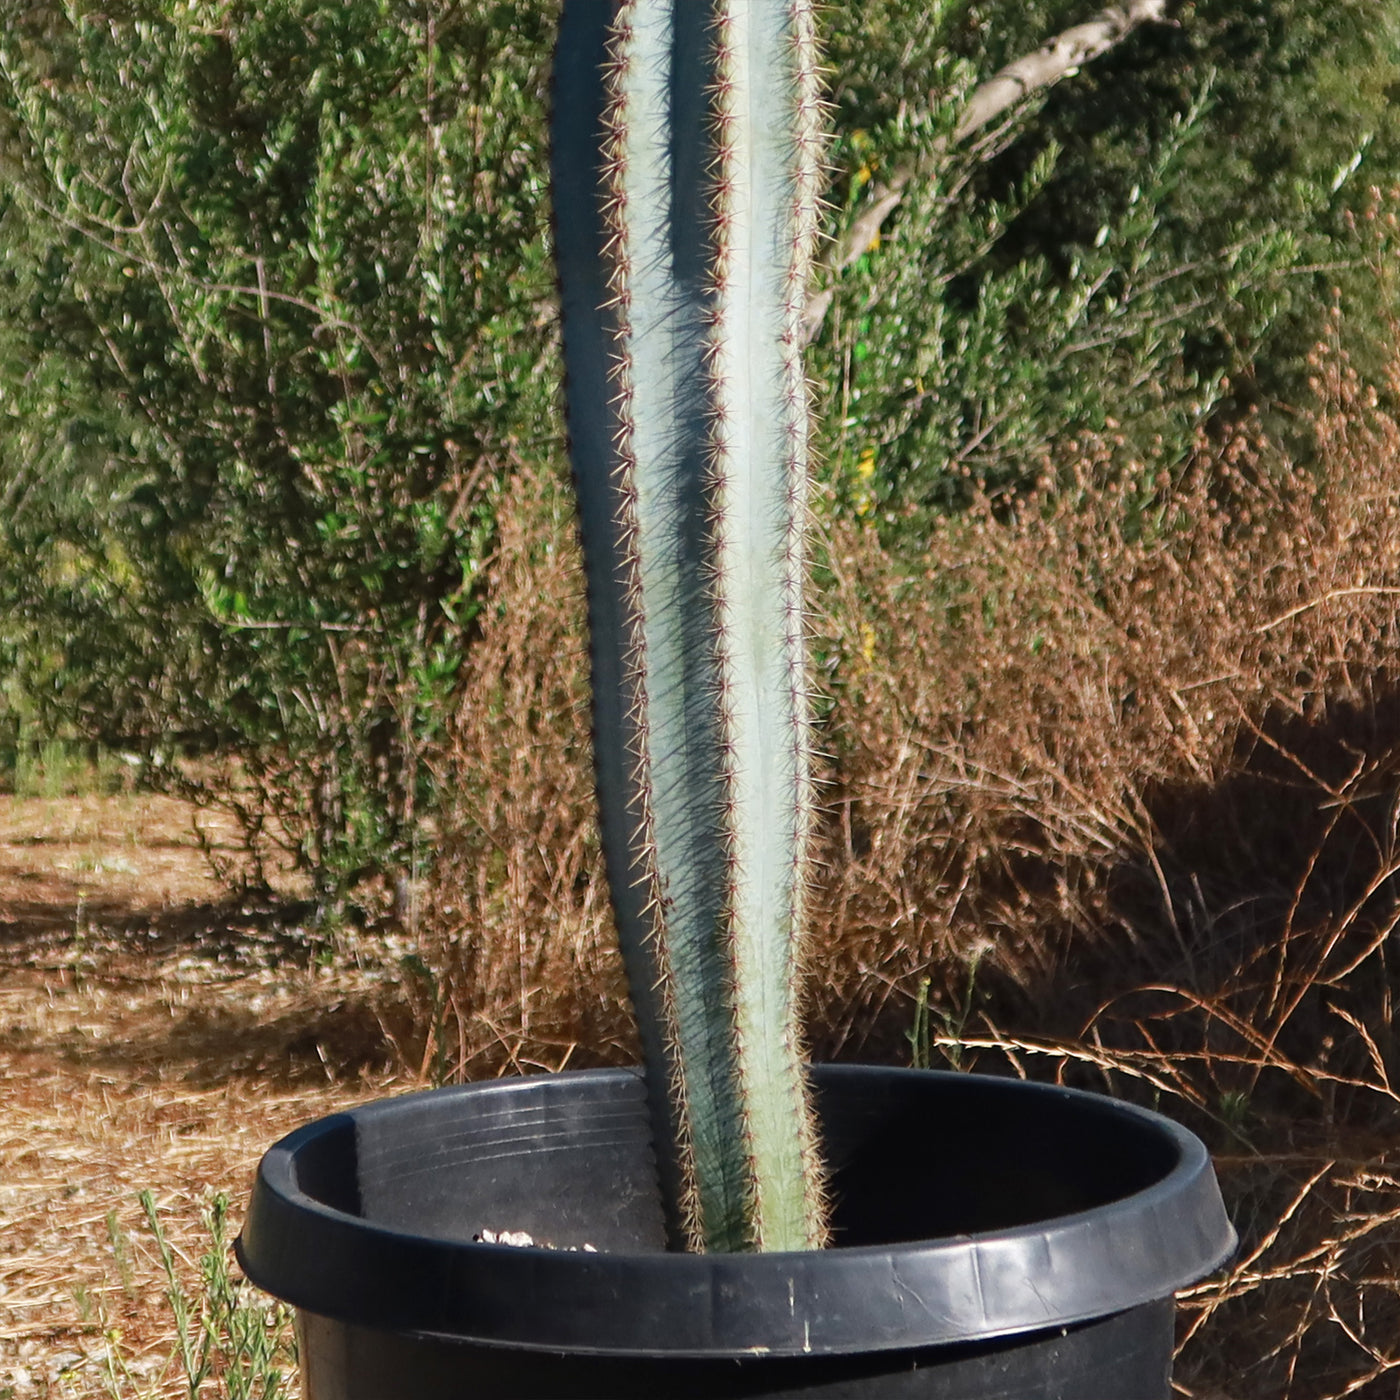 Brazilian Blue Cactus - Blue Columnar Cactus 'Pilosocereus azureus'